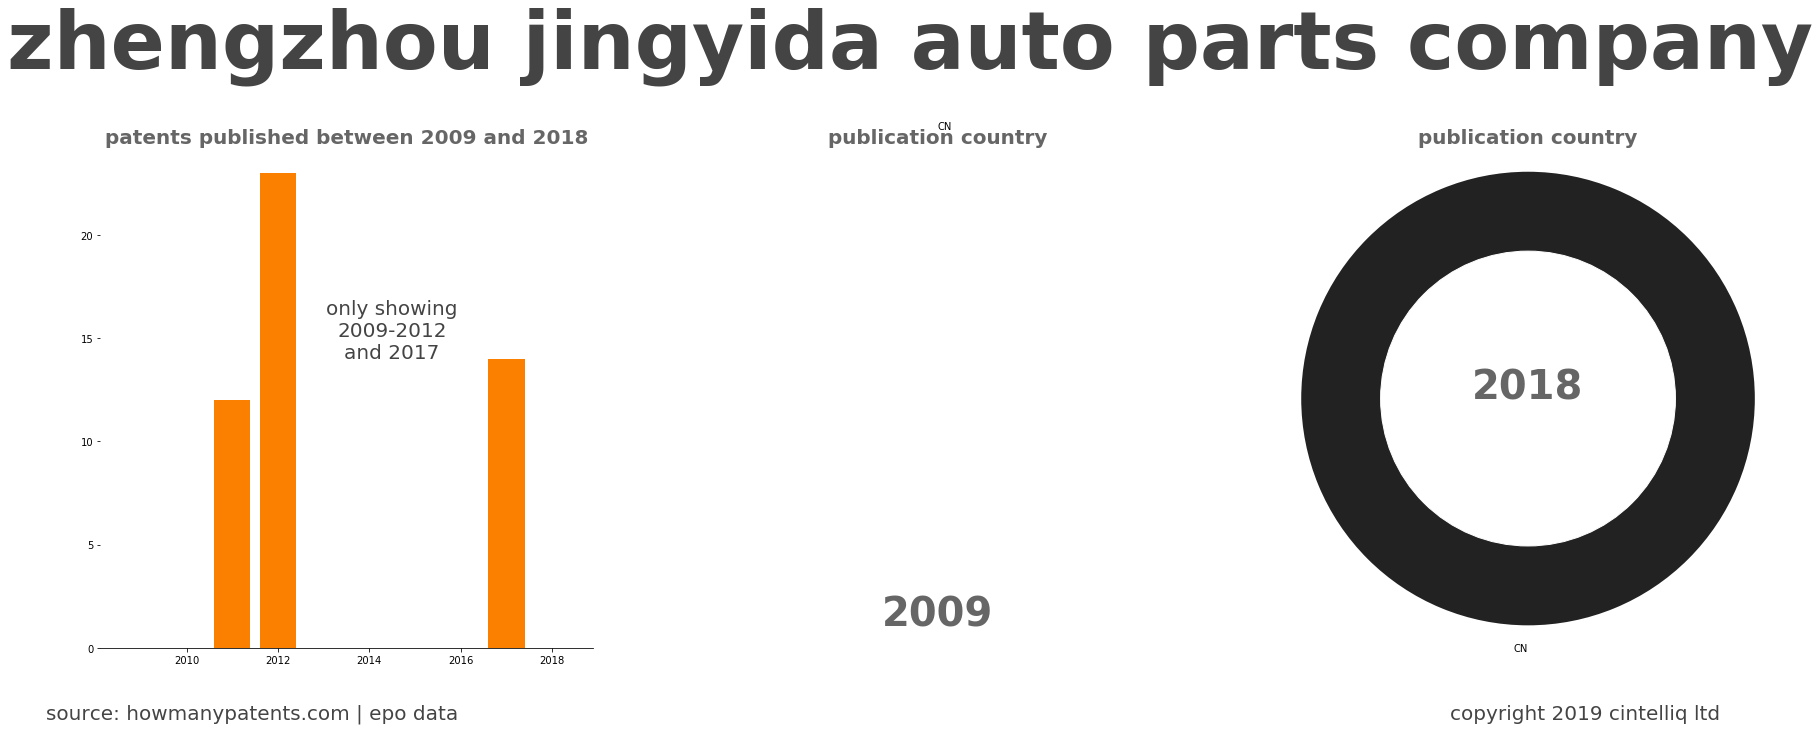 summary of patents for Zhengzhou Jingyida Auto Parts Company